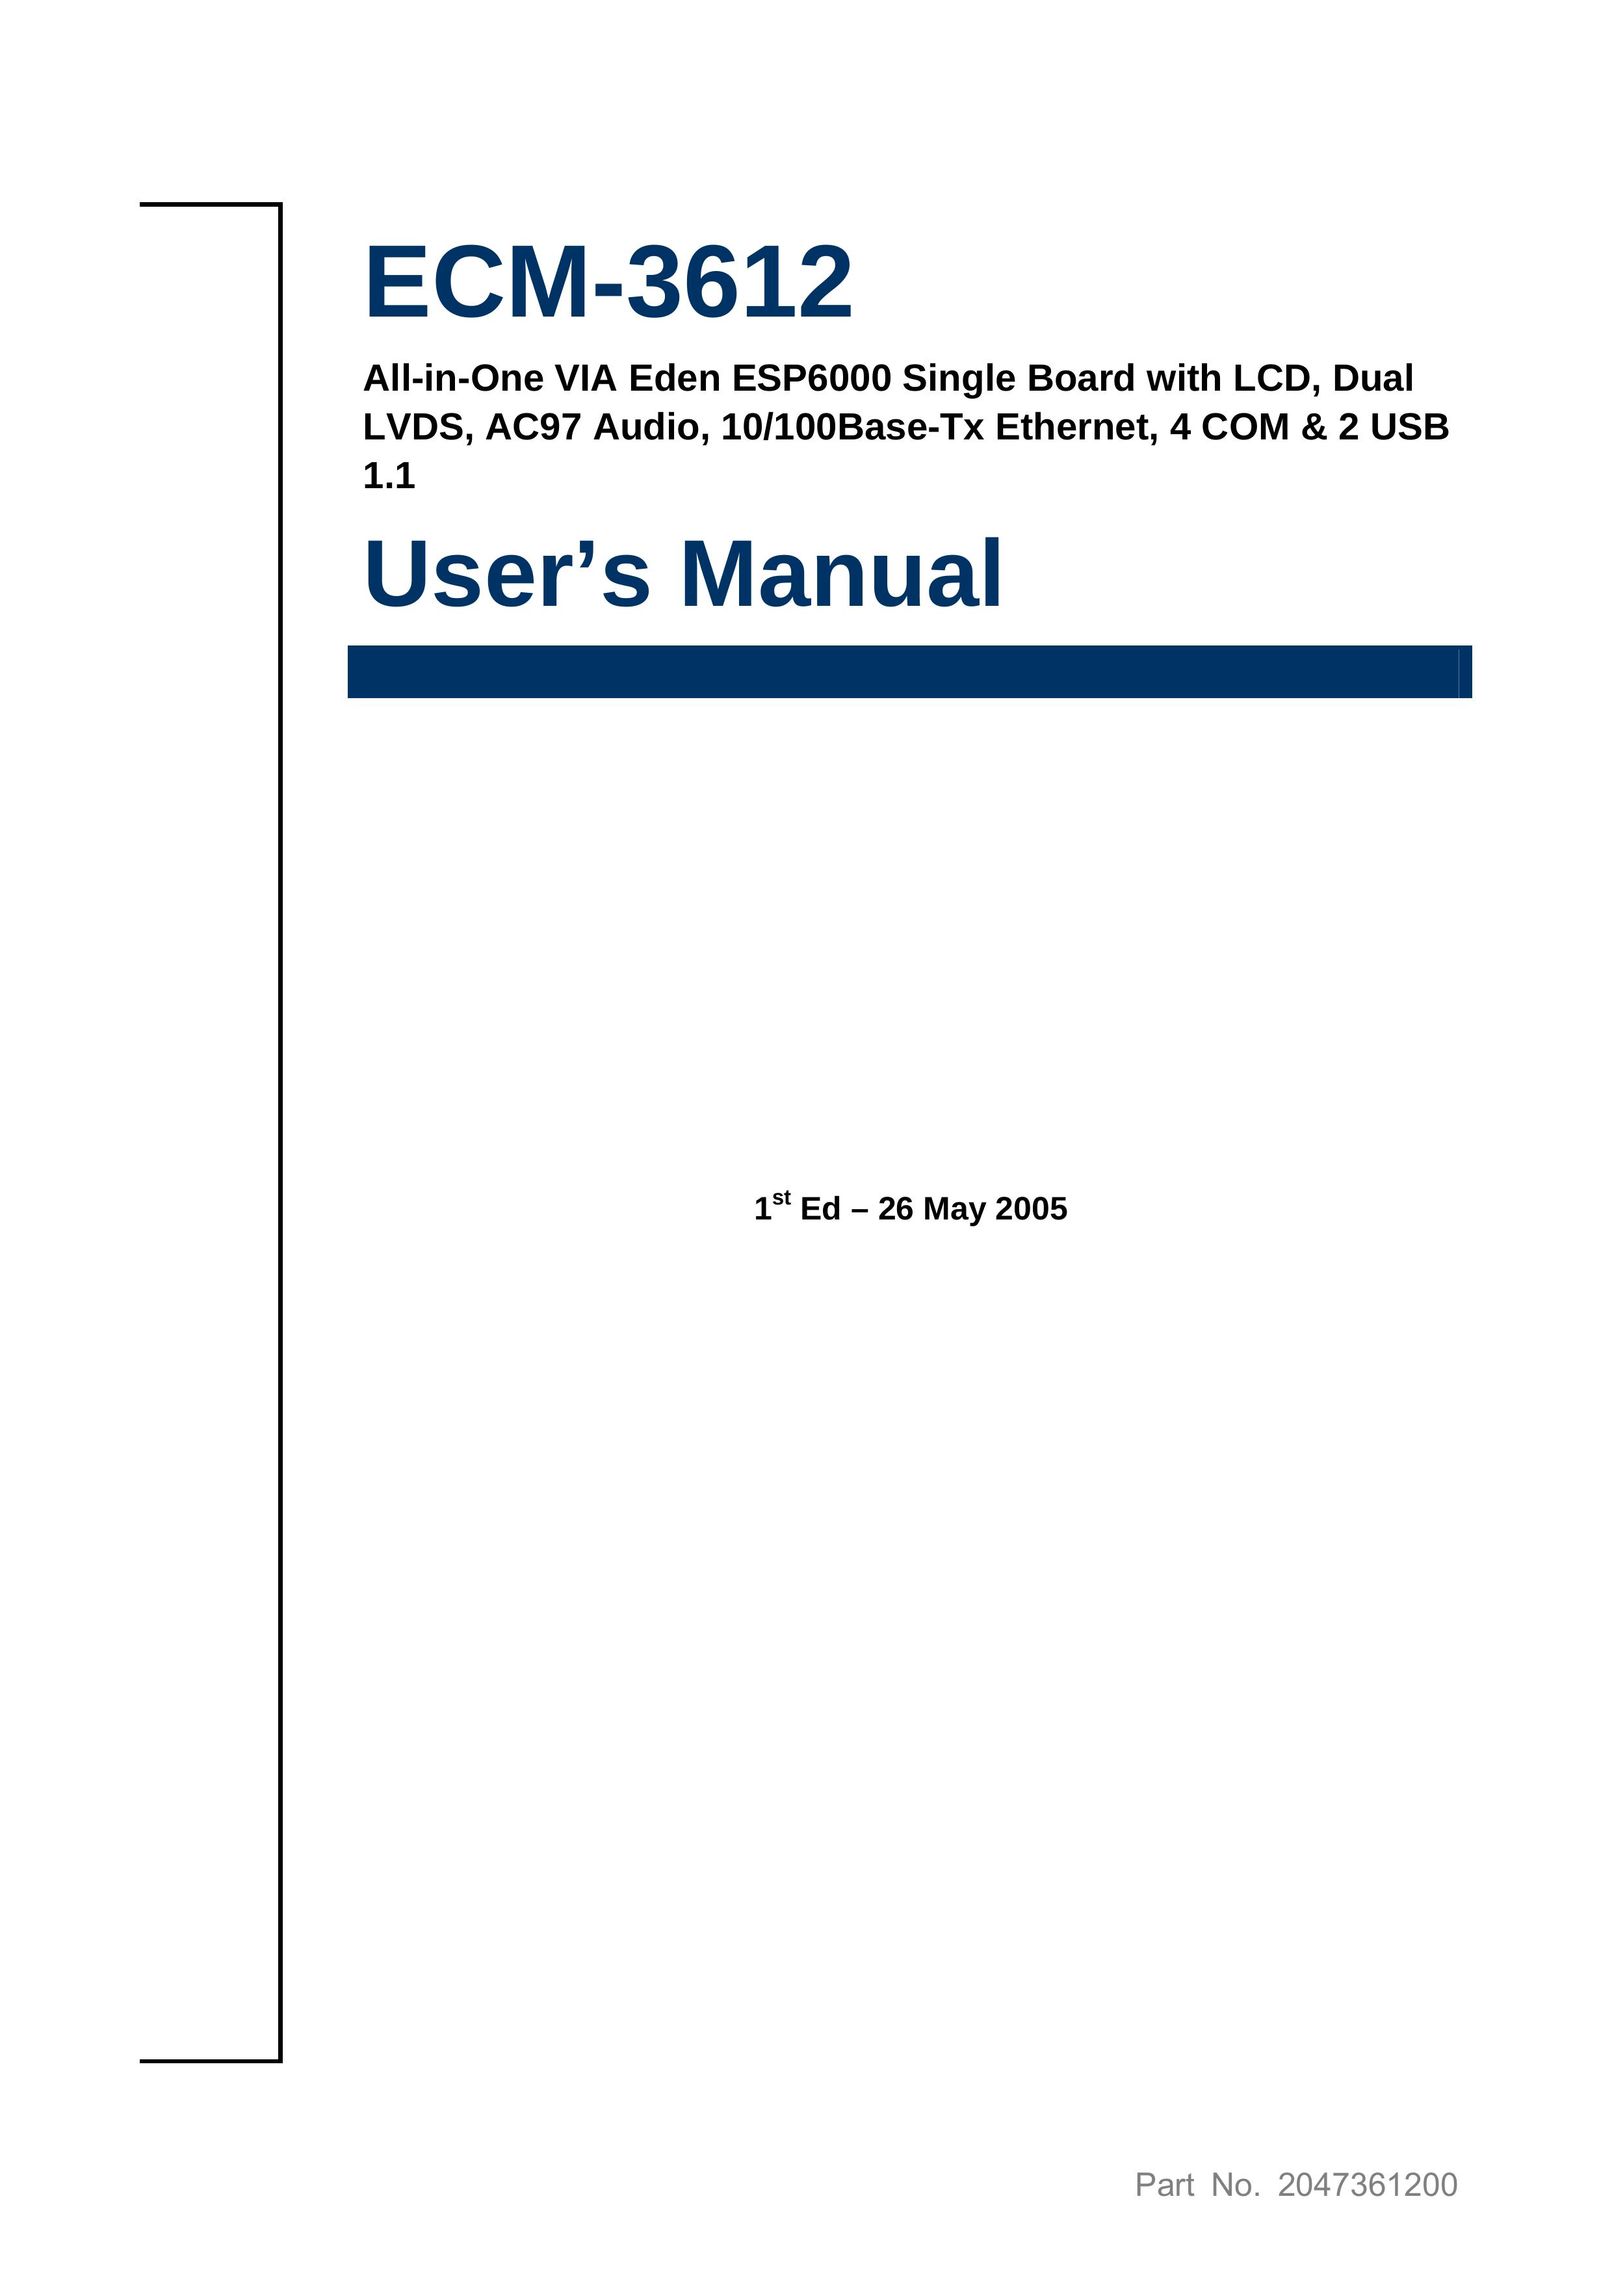 Apollo ESP6000 Network Card User Manual